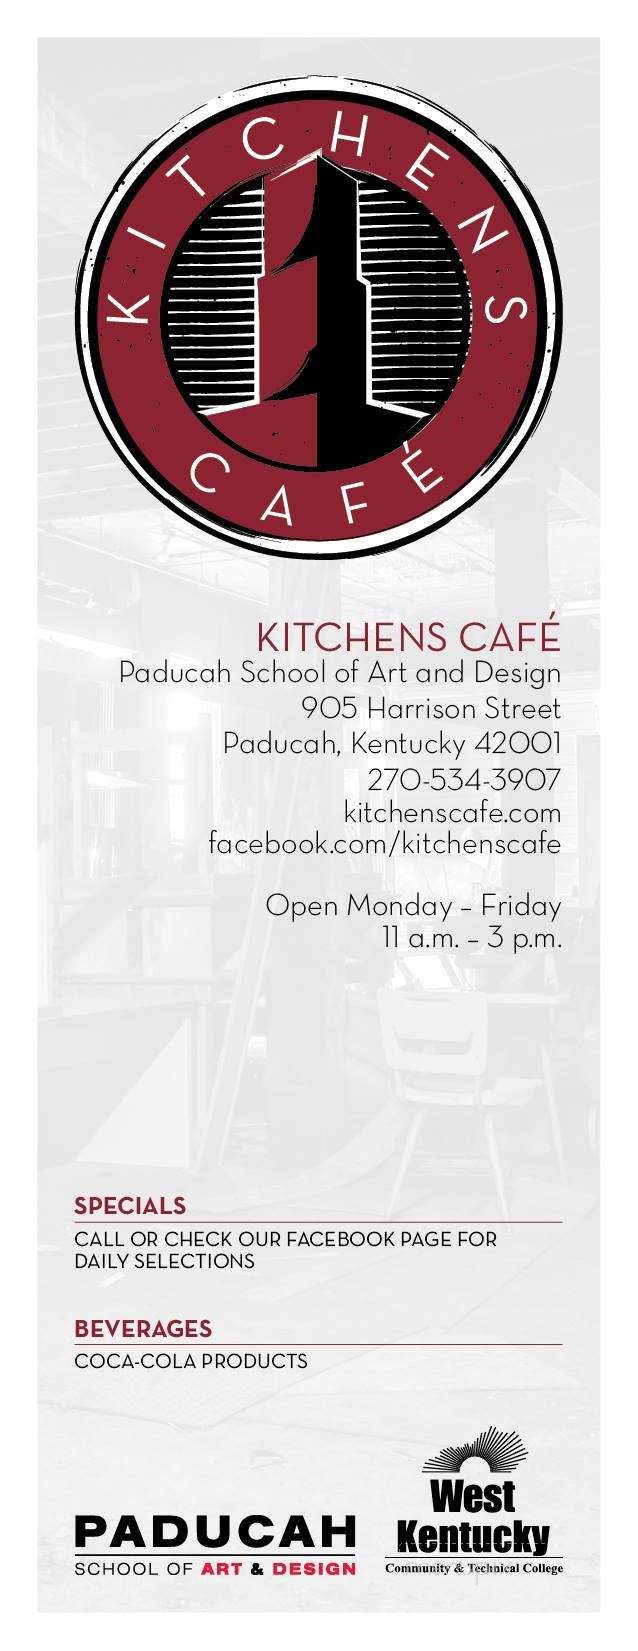 Kitchens Cafe - Paducah, KY